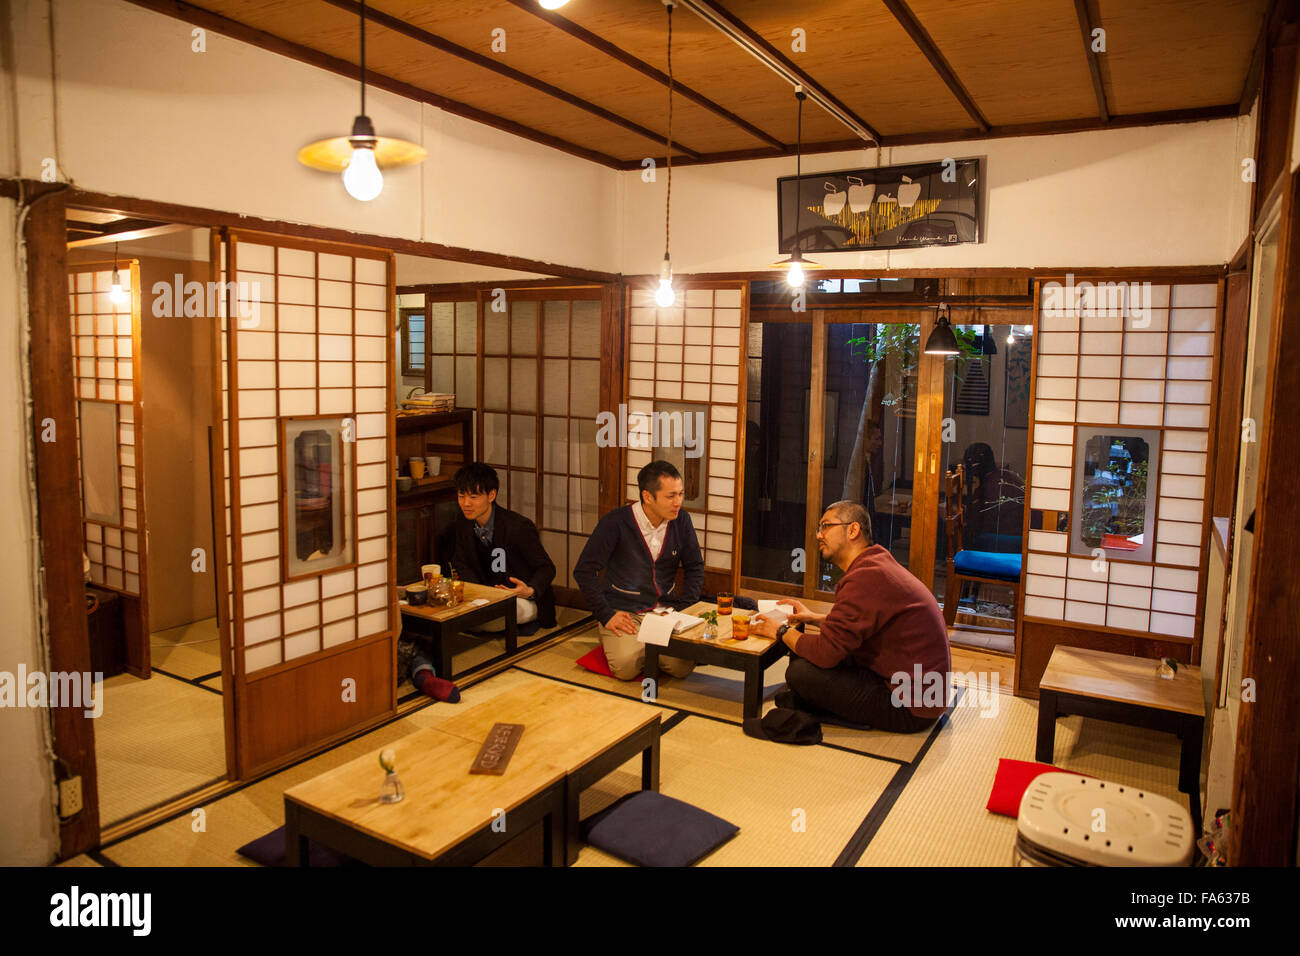 Une maison de thé japonaise traditionnelle Banque D'Images